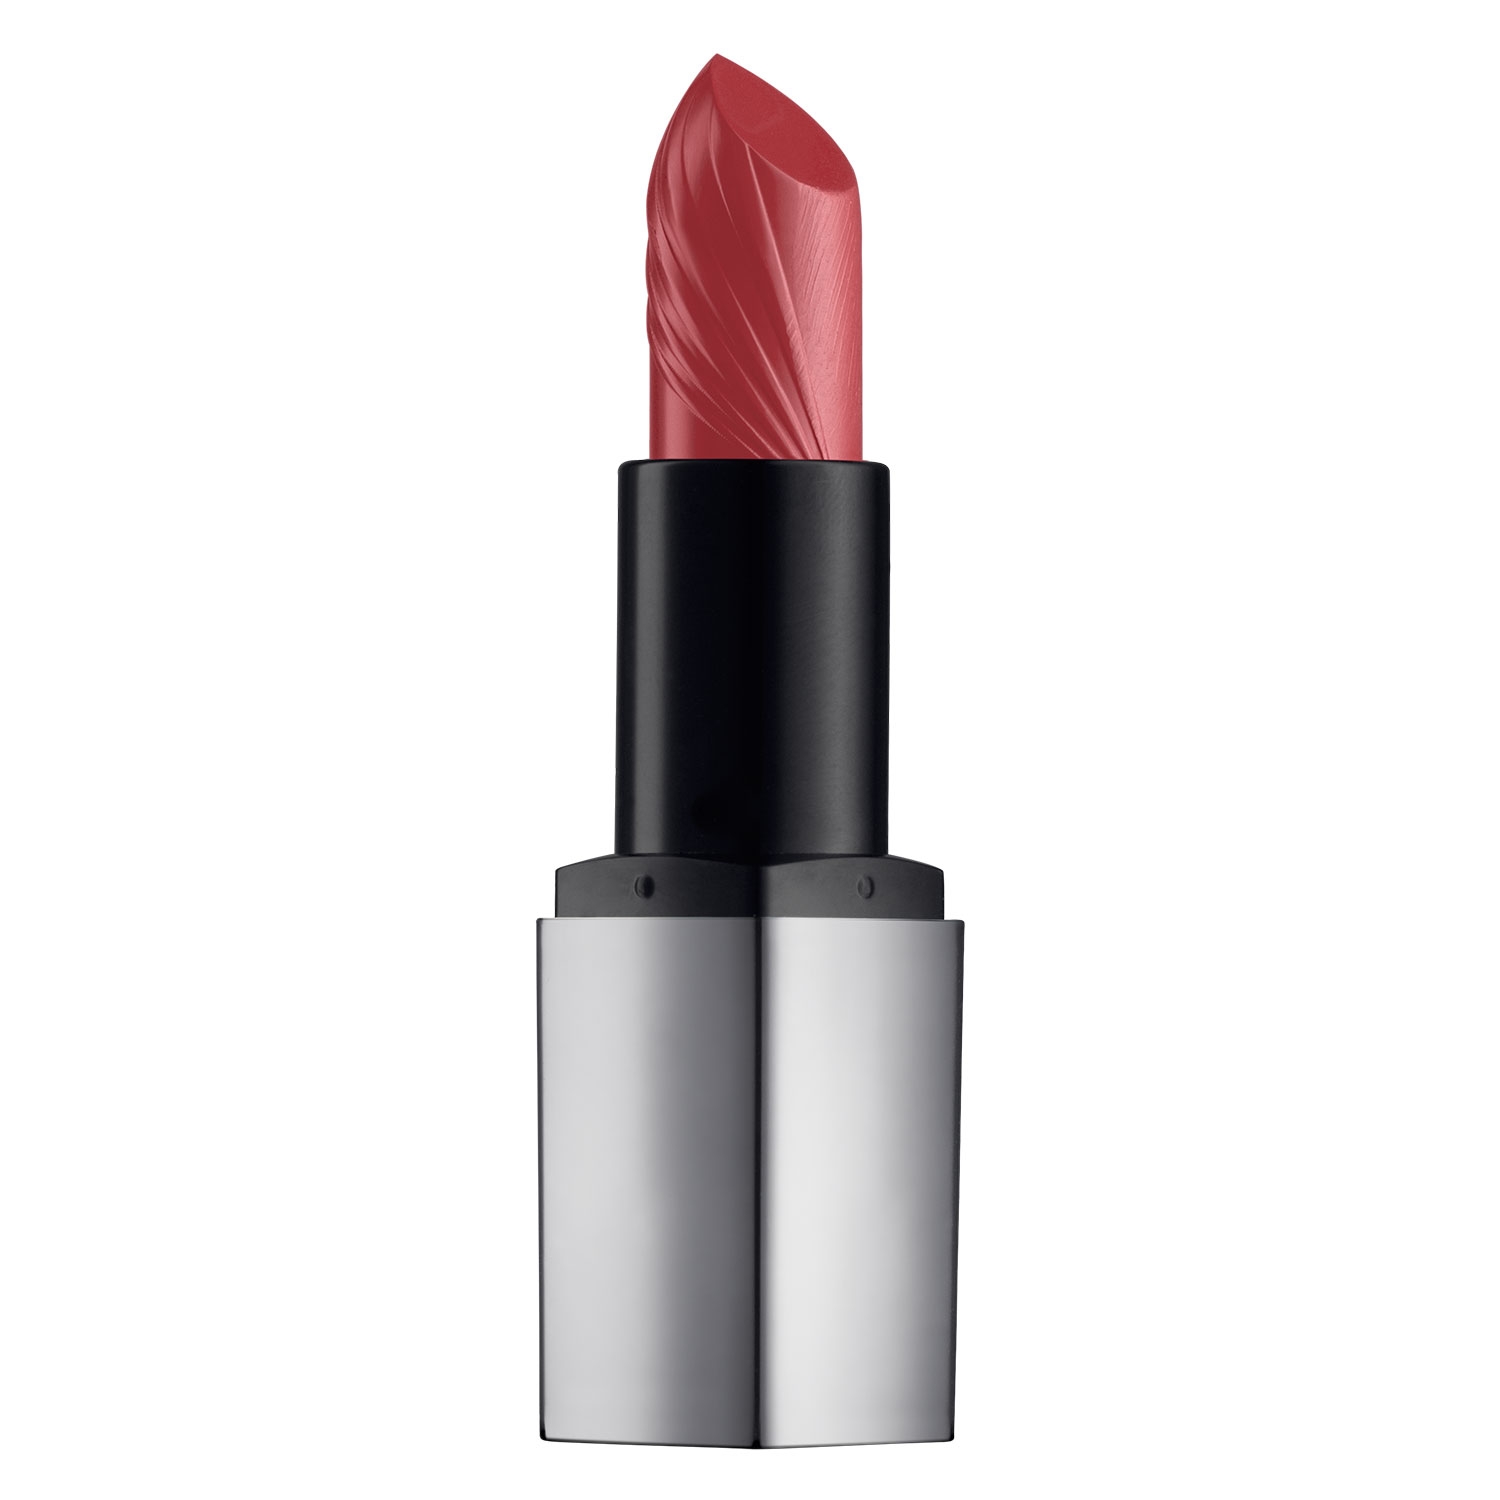 Produktbild von Reviderm Lips - Mineral Boost Lipstick Red Carpet Seduction 4W